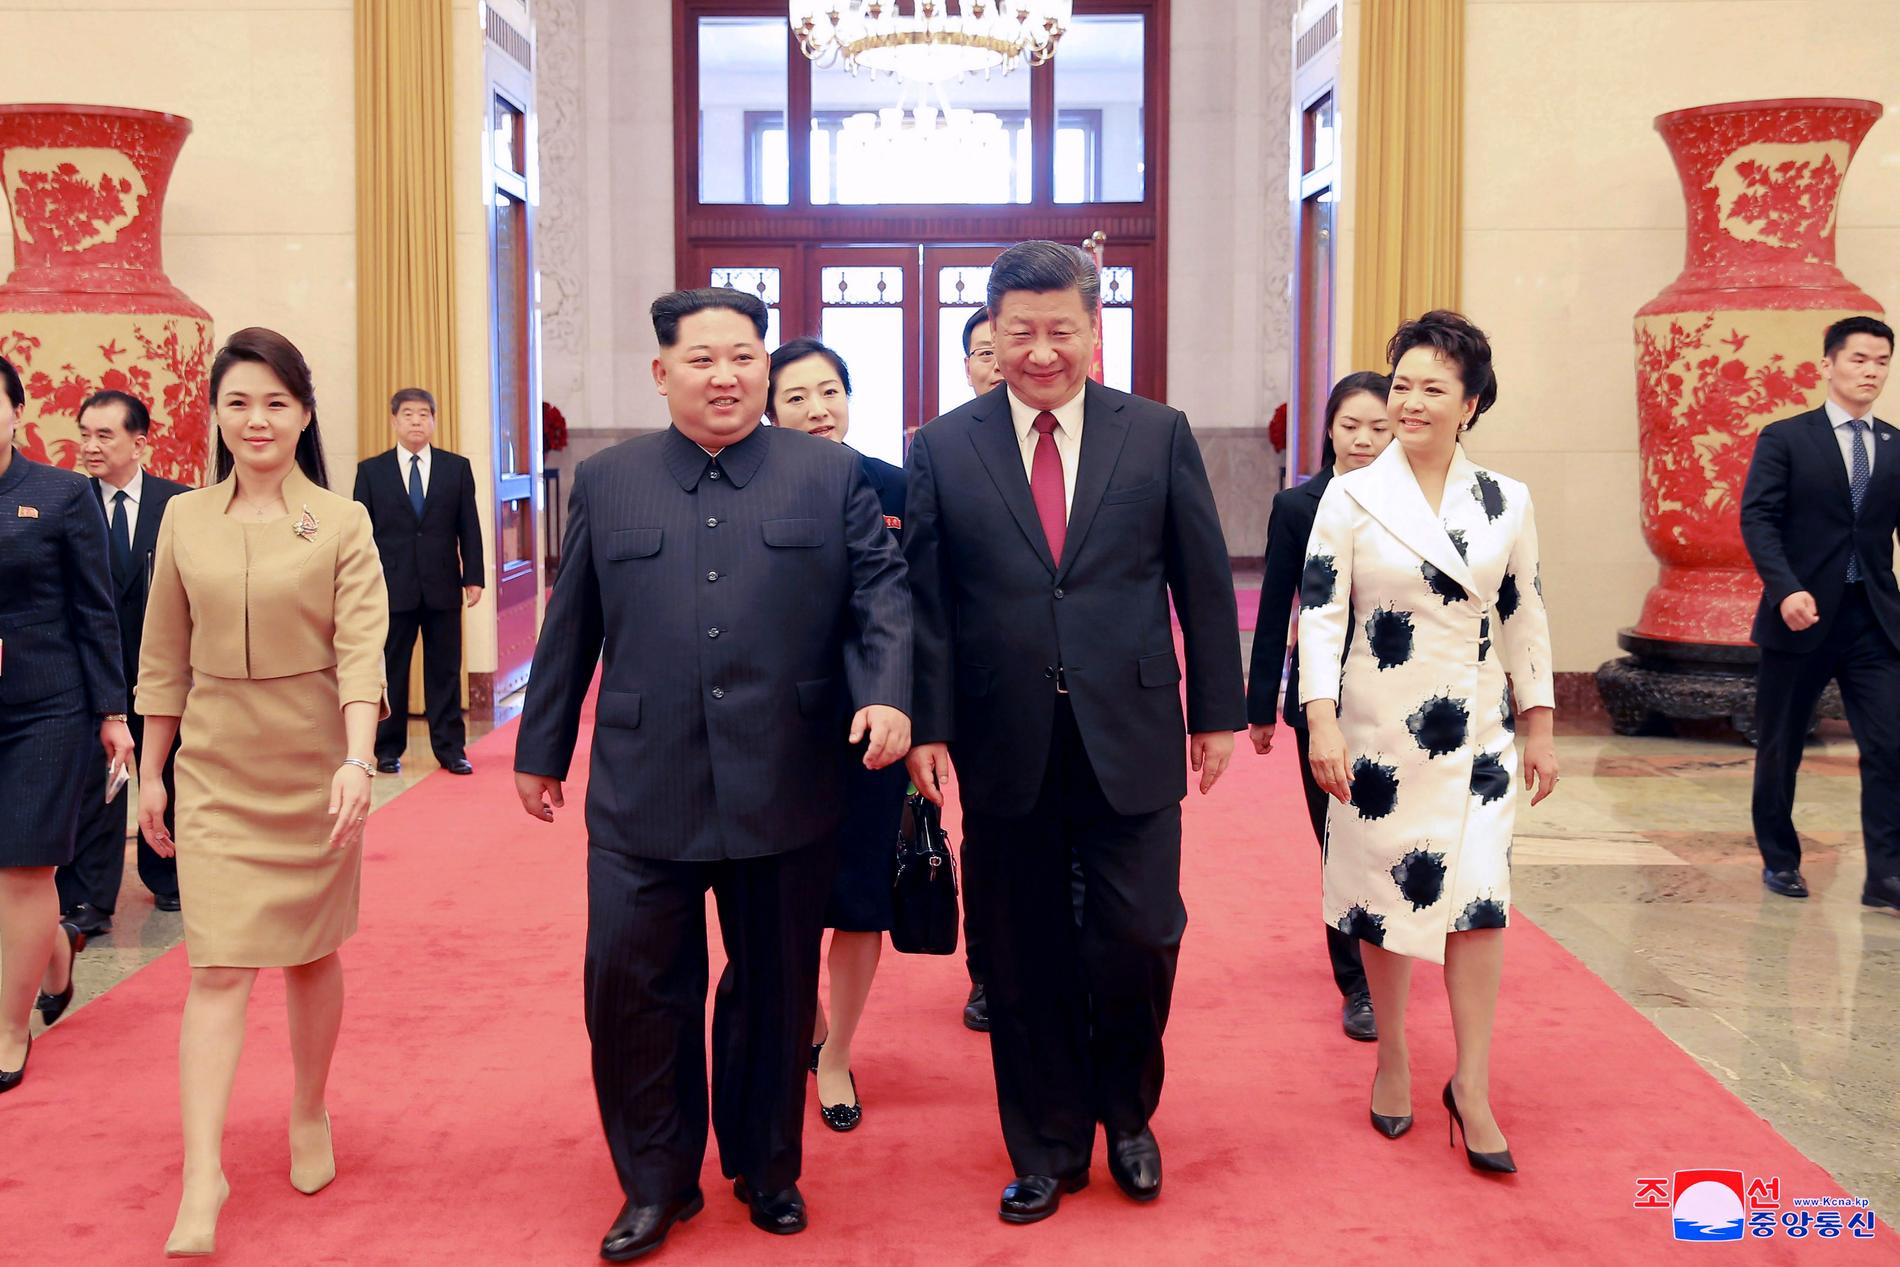 Kims fru, till vänster, ansågs bättre klädd än Xis fru, till höger – i alla fall enligt användarna på Kinas motsvarighet till Twitter.